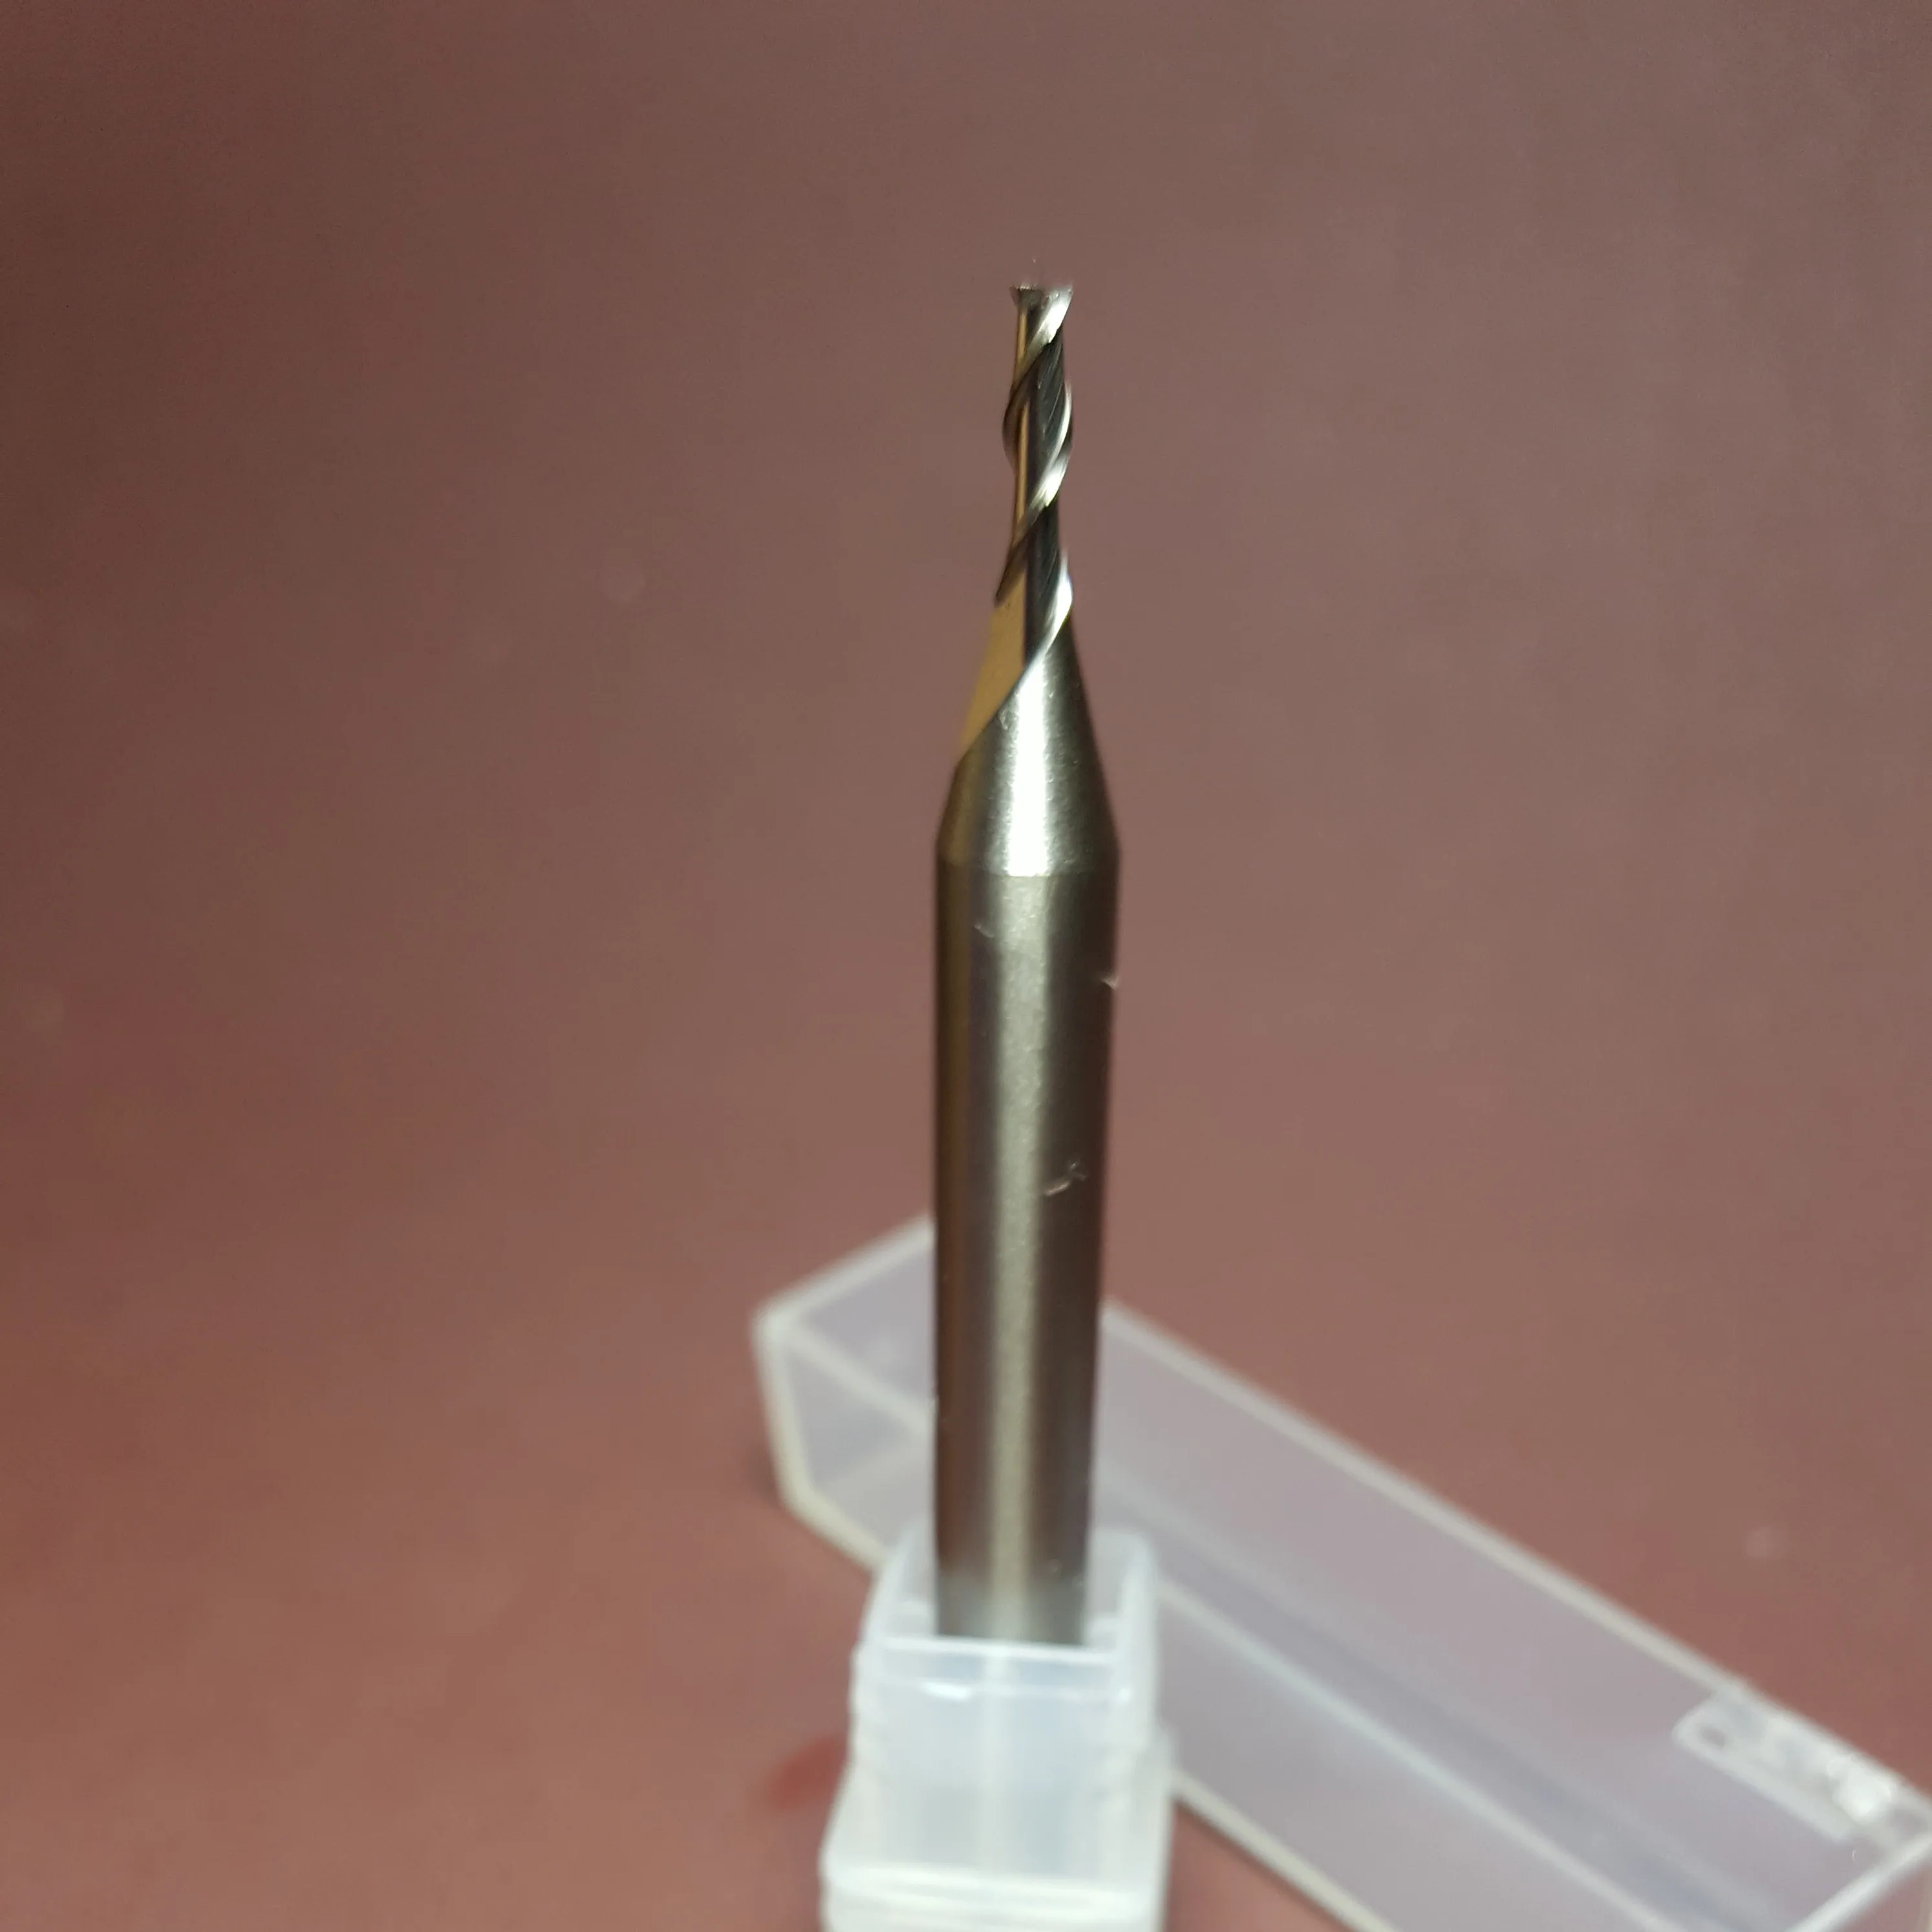 HSS 6mm Shank 2 Flute Ball Nose End Milling Lathe Cutter CNC Router Bit Tool BS